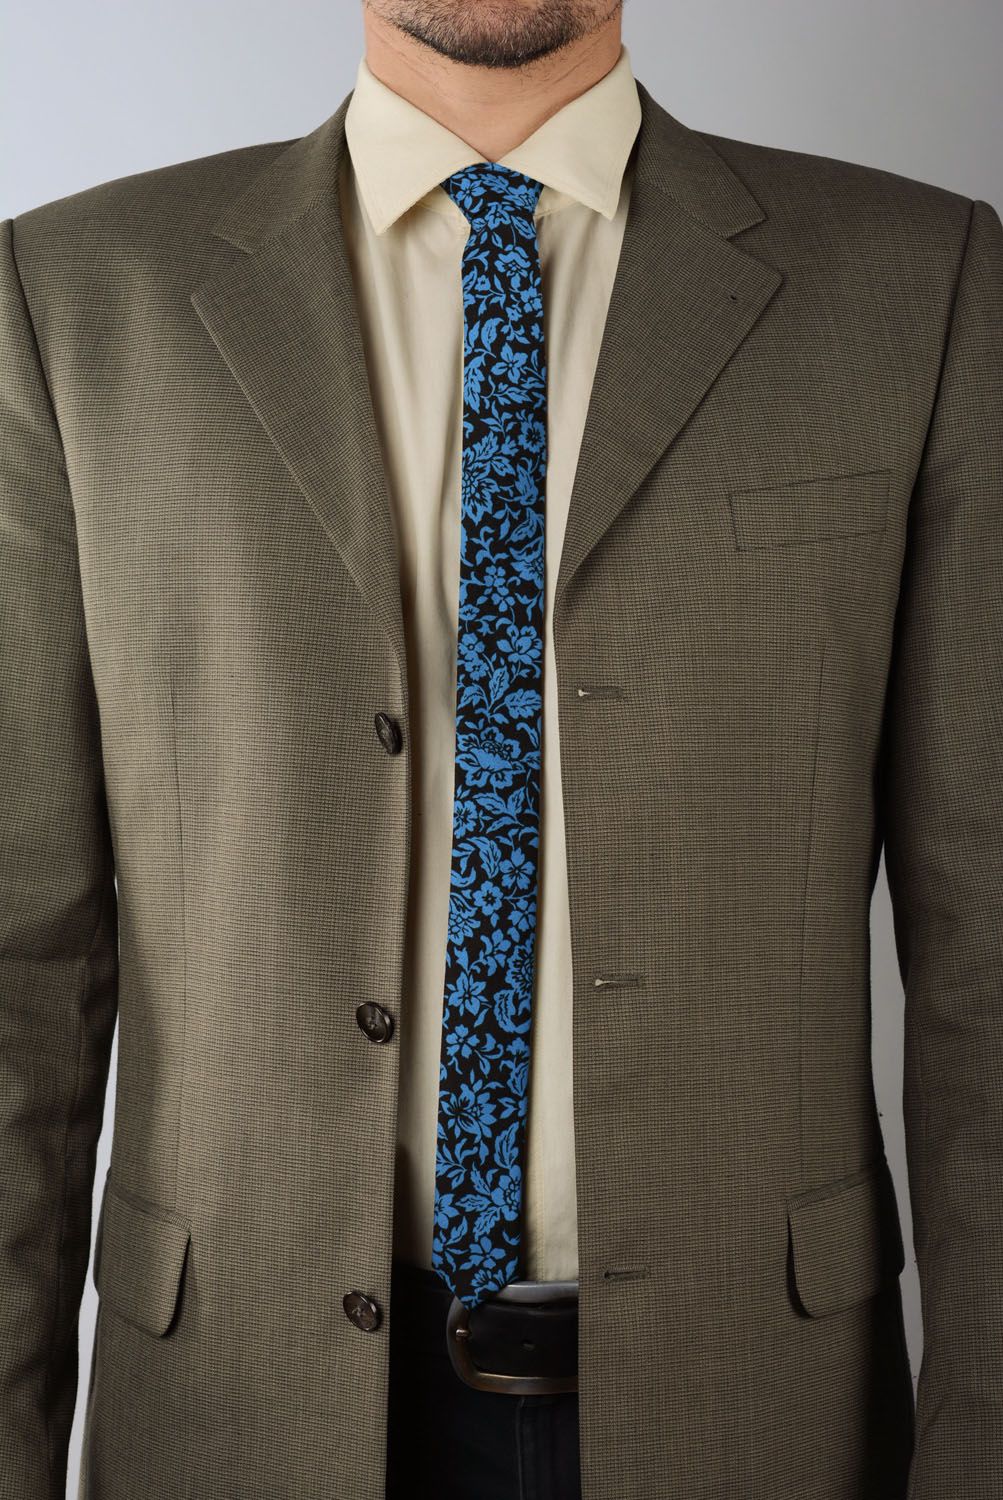 Cravate en coton originale Bleu sur noir photo 1